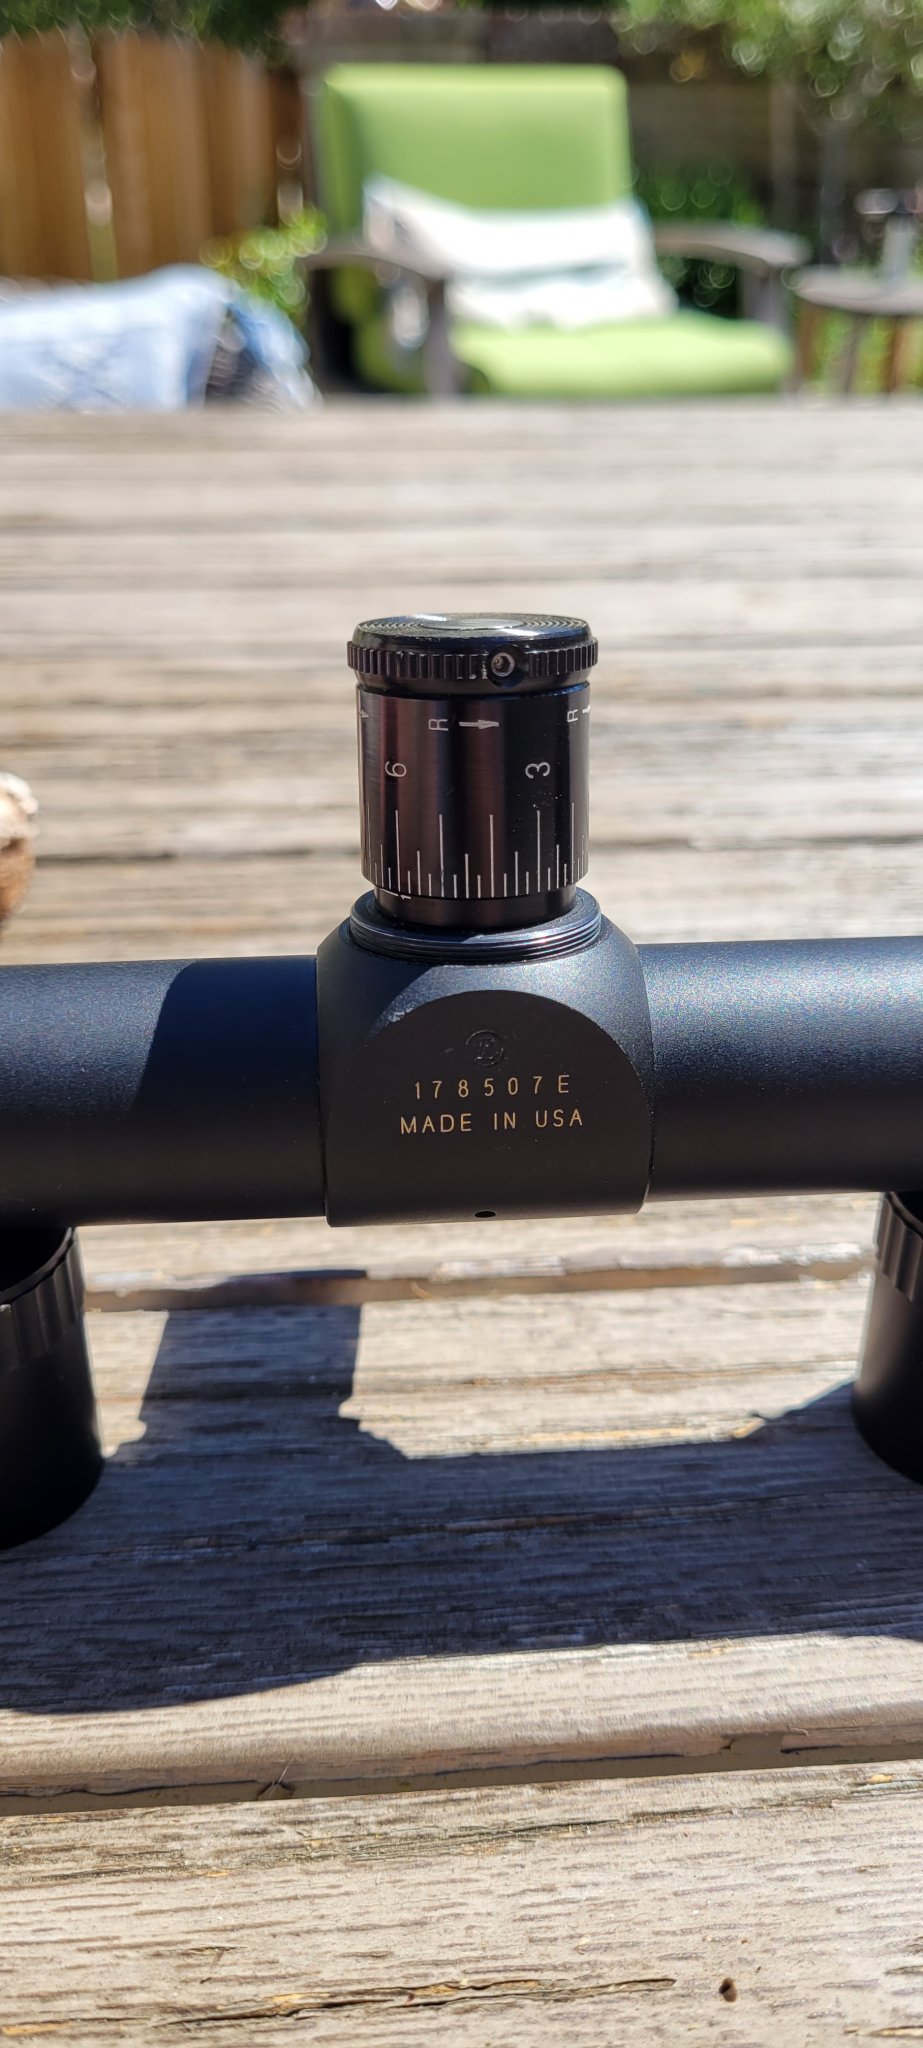 Optics - Wts lnib Leupold M8 6x42 | Sniper's Hide Forum